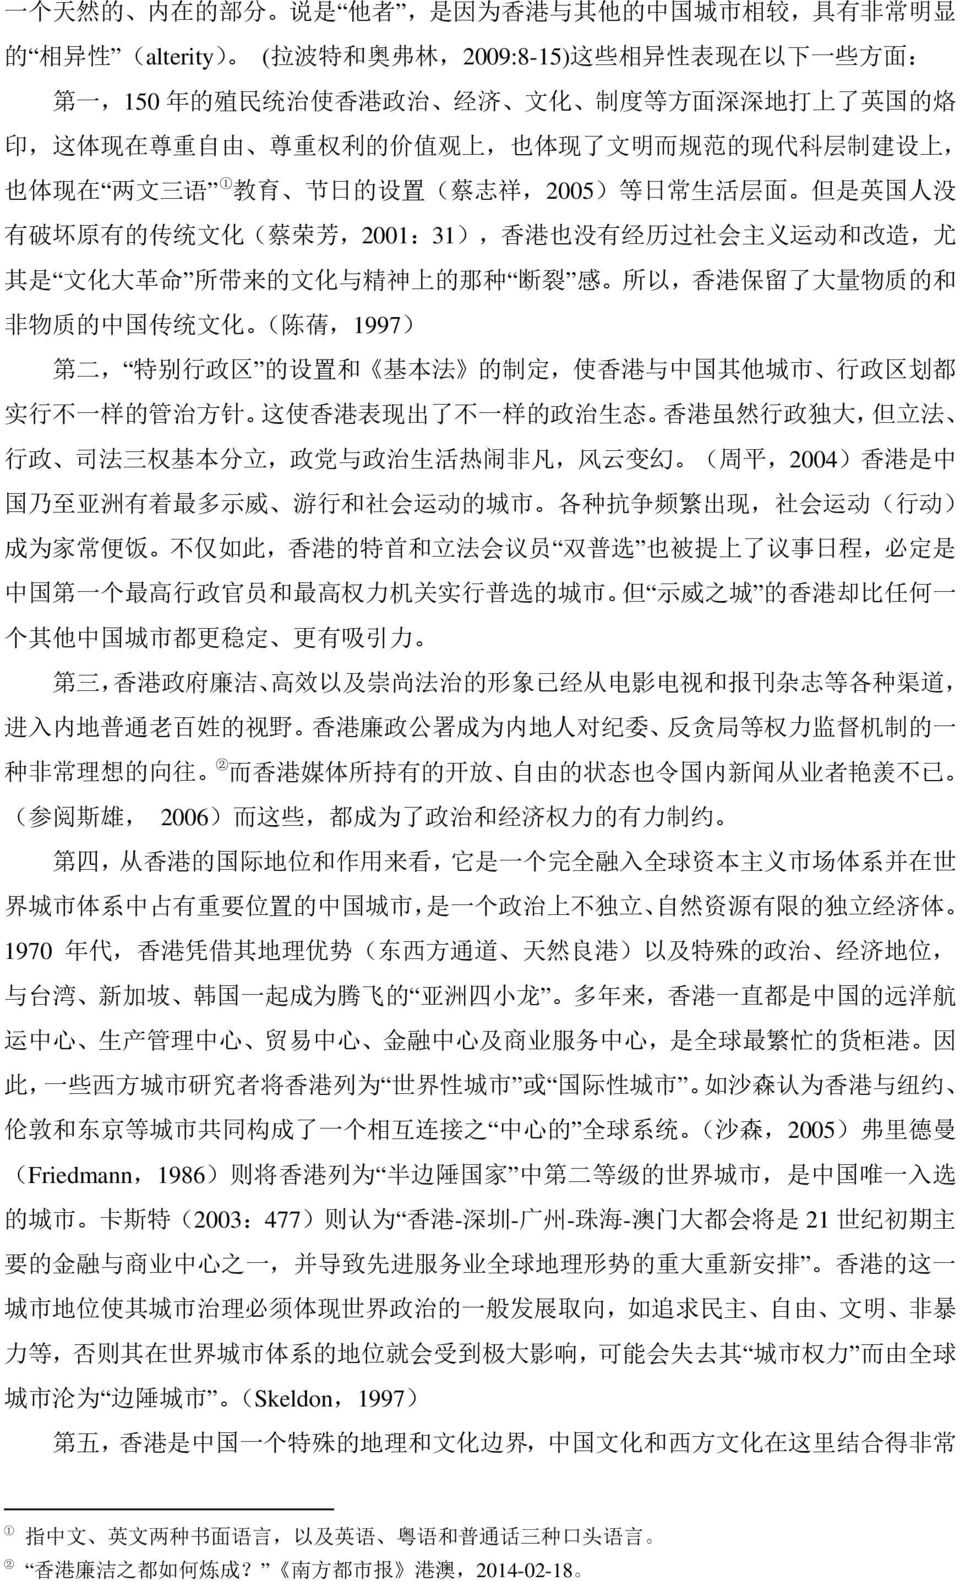 芳,2001:31), 香 港 也 没 有 经 历 过 社 会 主 义 运 动 和 改 造, 尤 其 是 文 化 大 革 命 所 带 来 的 文 化 与 精 神 上 的 那 种 断 裂 感 所 以, 香 港 保 留 了 大 量 物 质 的 和 非 物 质 的 中 国 传 统 文 化 ( 陈 蒨,1997) 第 二, 特 别 行 政 区 的 设 置 和 基 本 法 的 制 定, 使 香 港 与 中